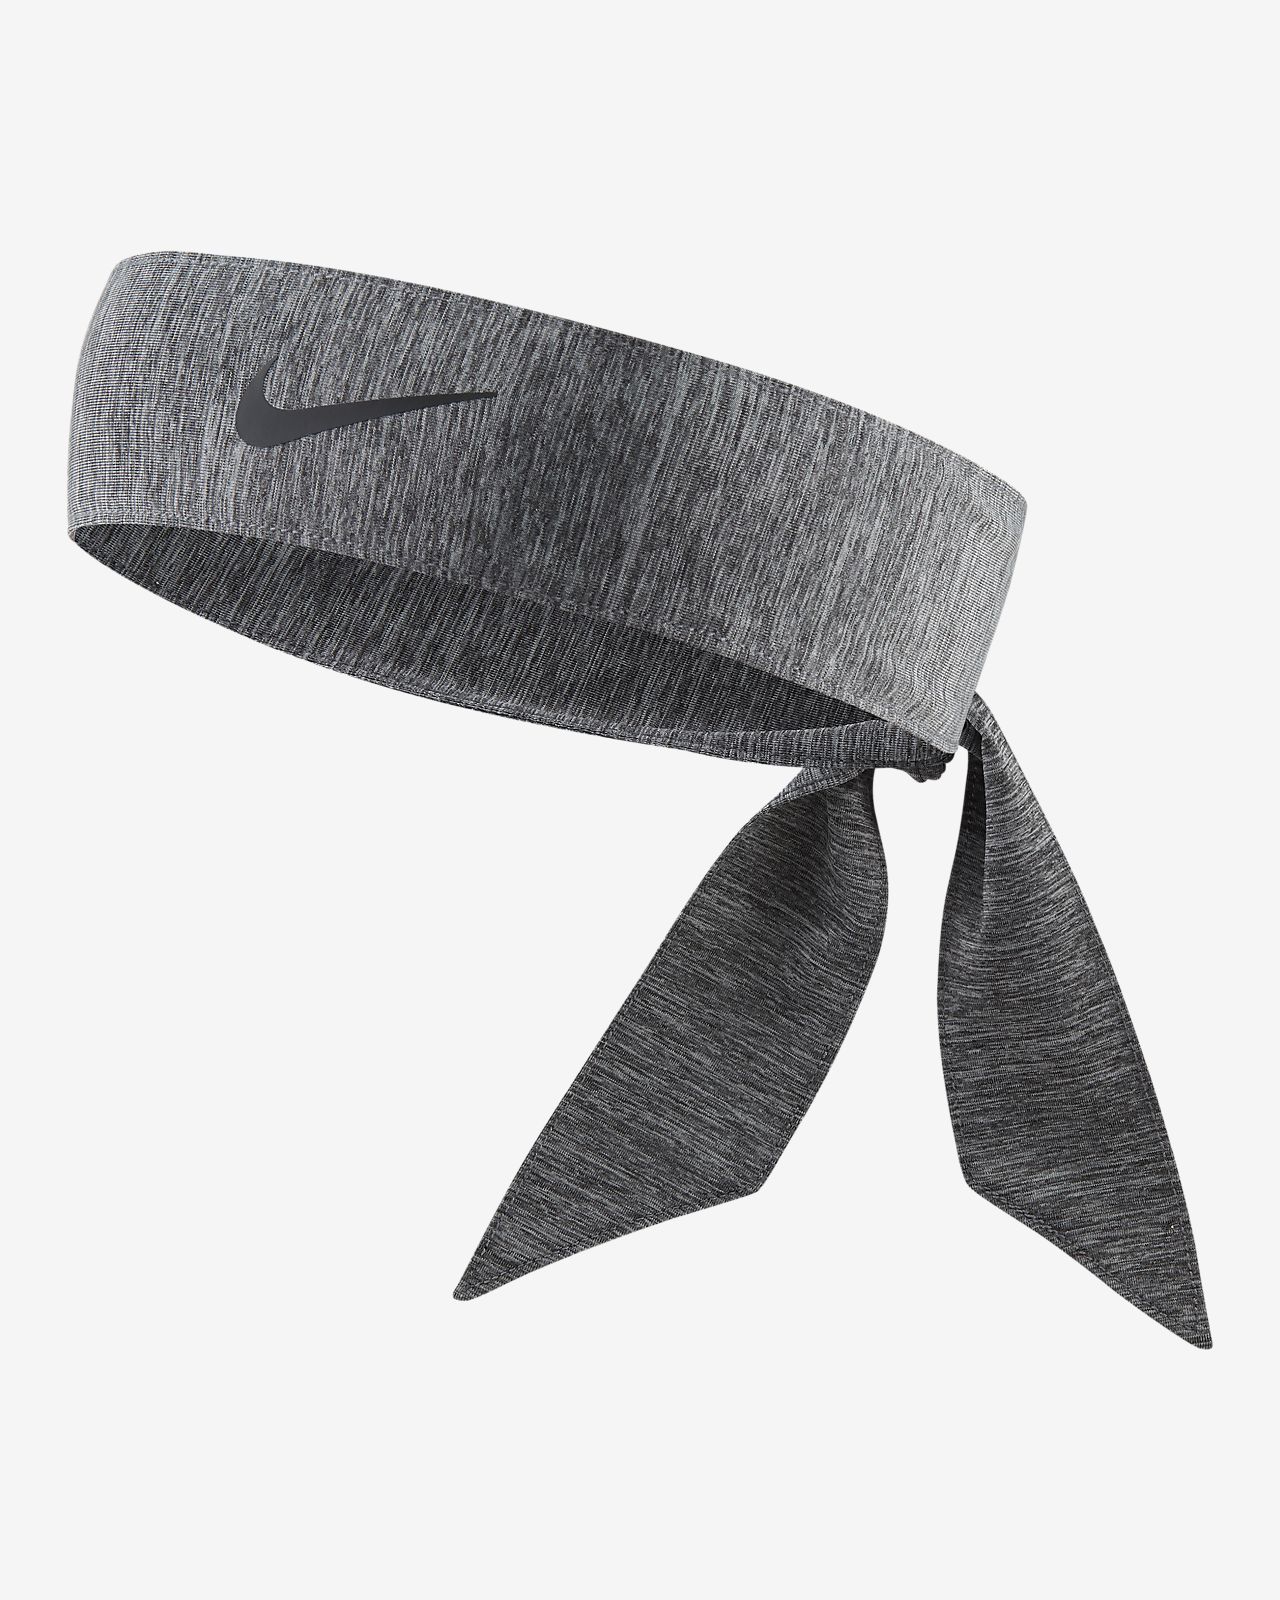 gray nike headband